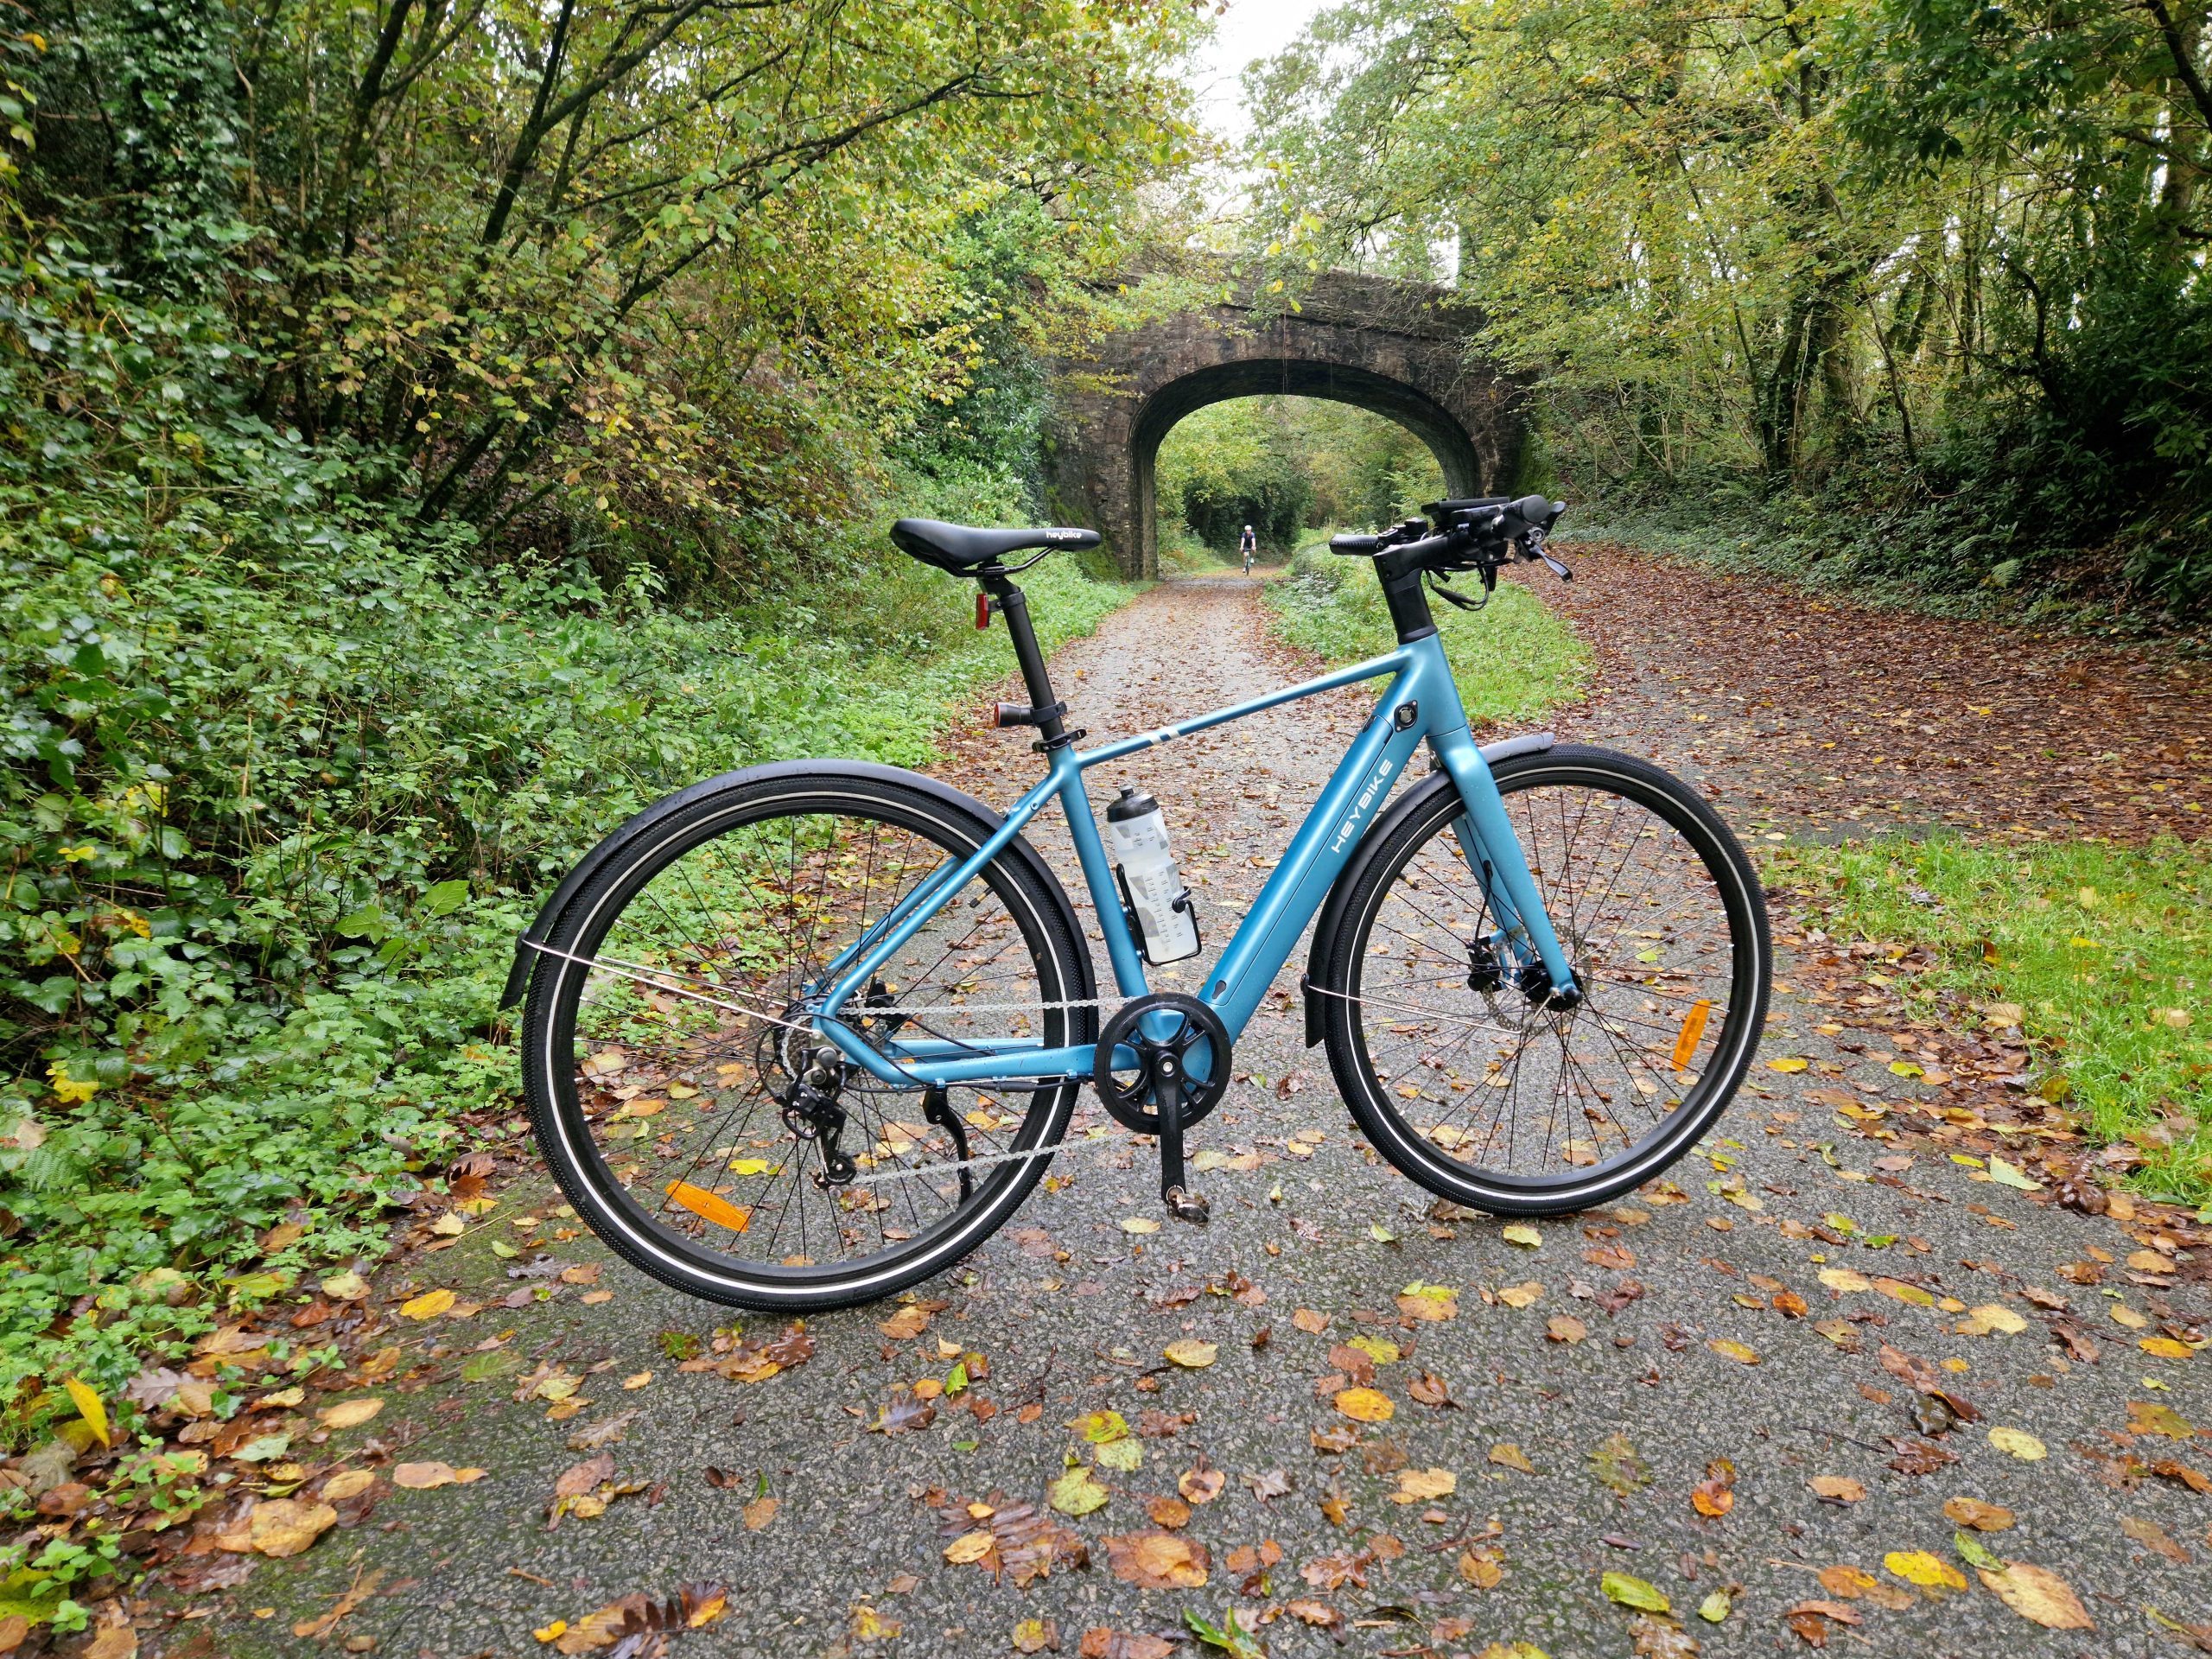 heybike ec1 e-bike pictured on a cycle trail